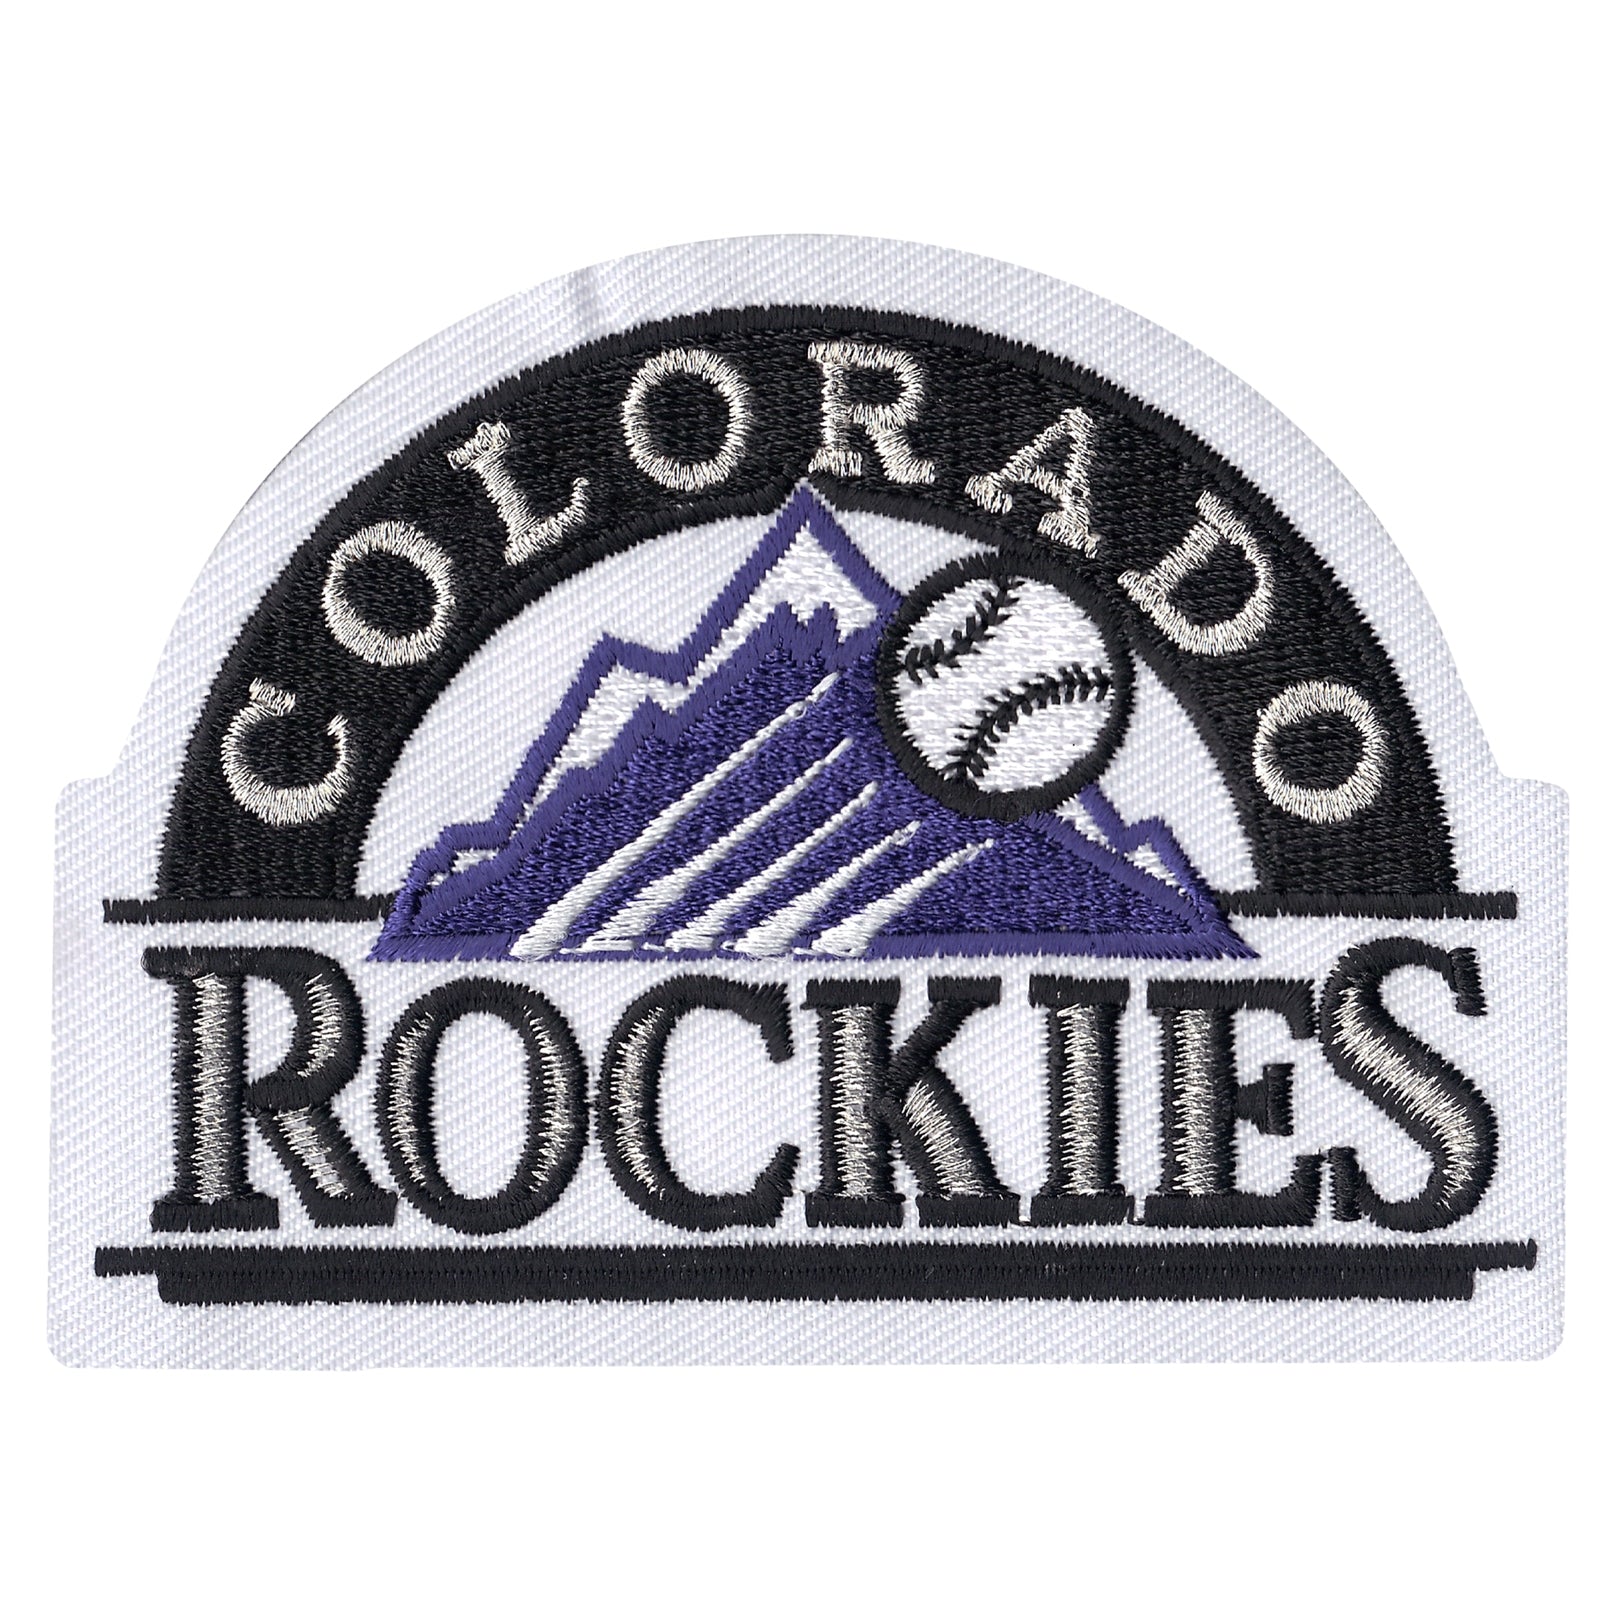 Colorado Rockies Primary Logo Patch